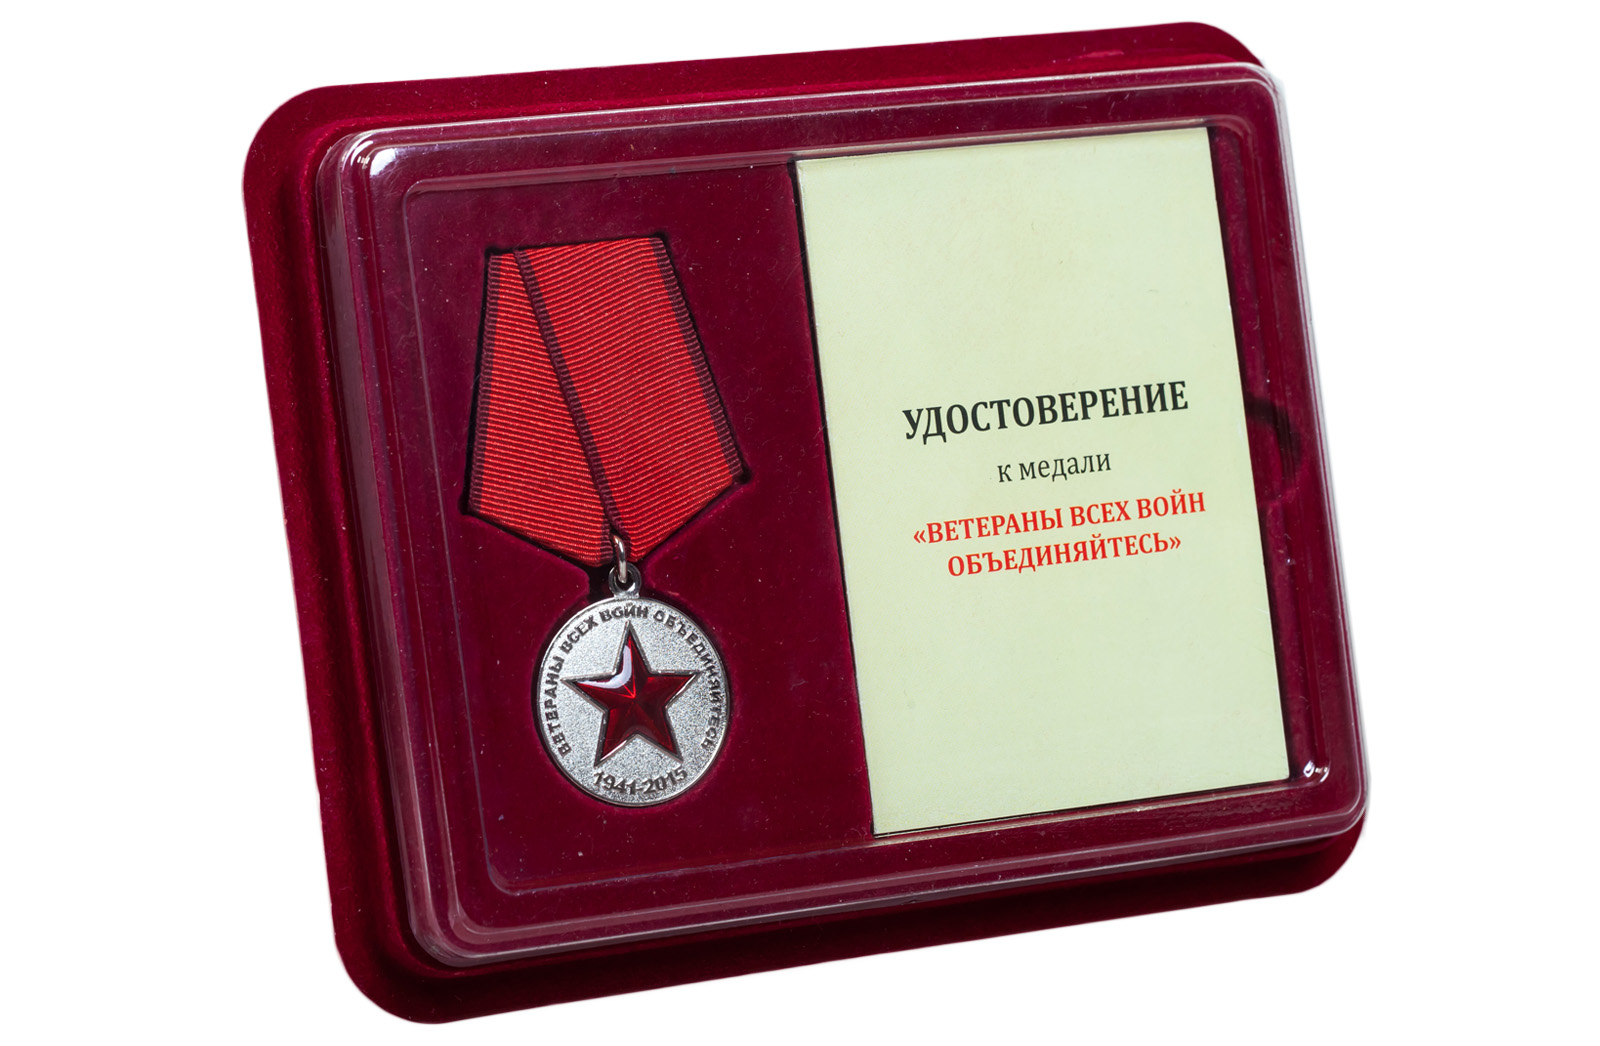 Купить медаль "Солдат своей страны" по экономичной цене